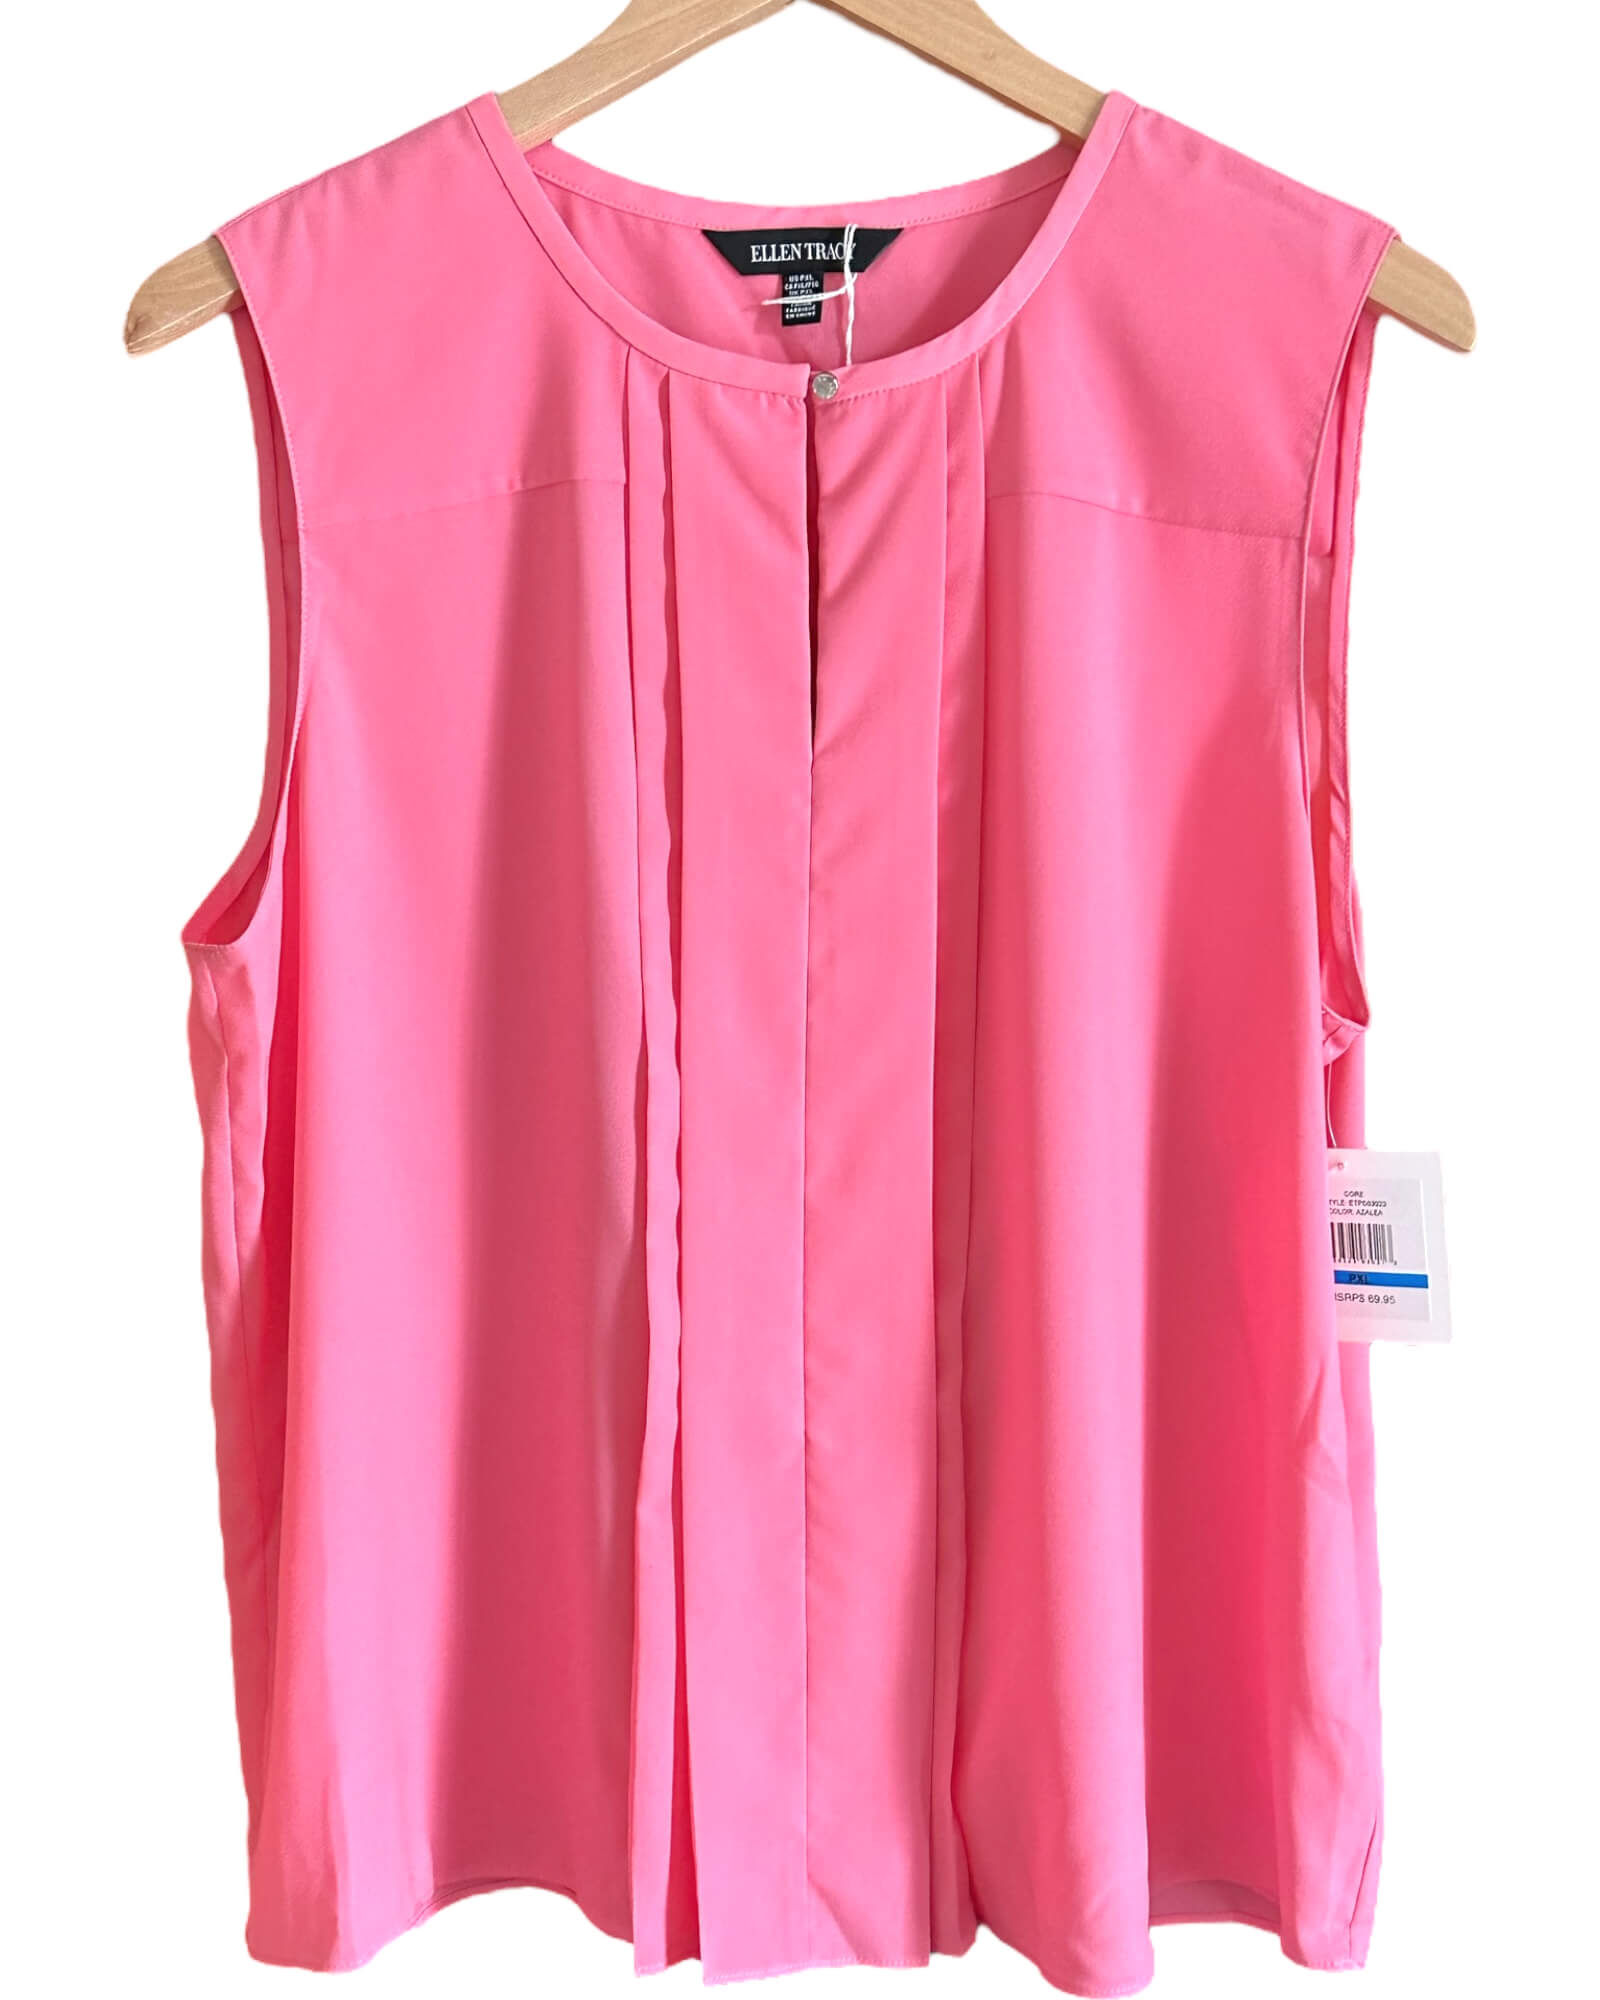 Light Spring ELLEN TRACY azalea pink pleated sleeveless blouse